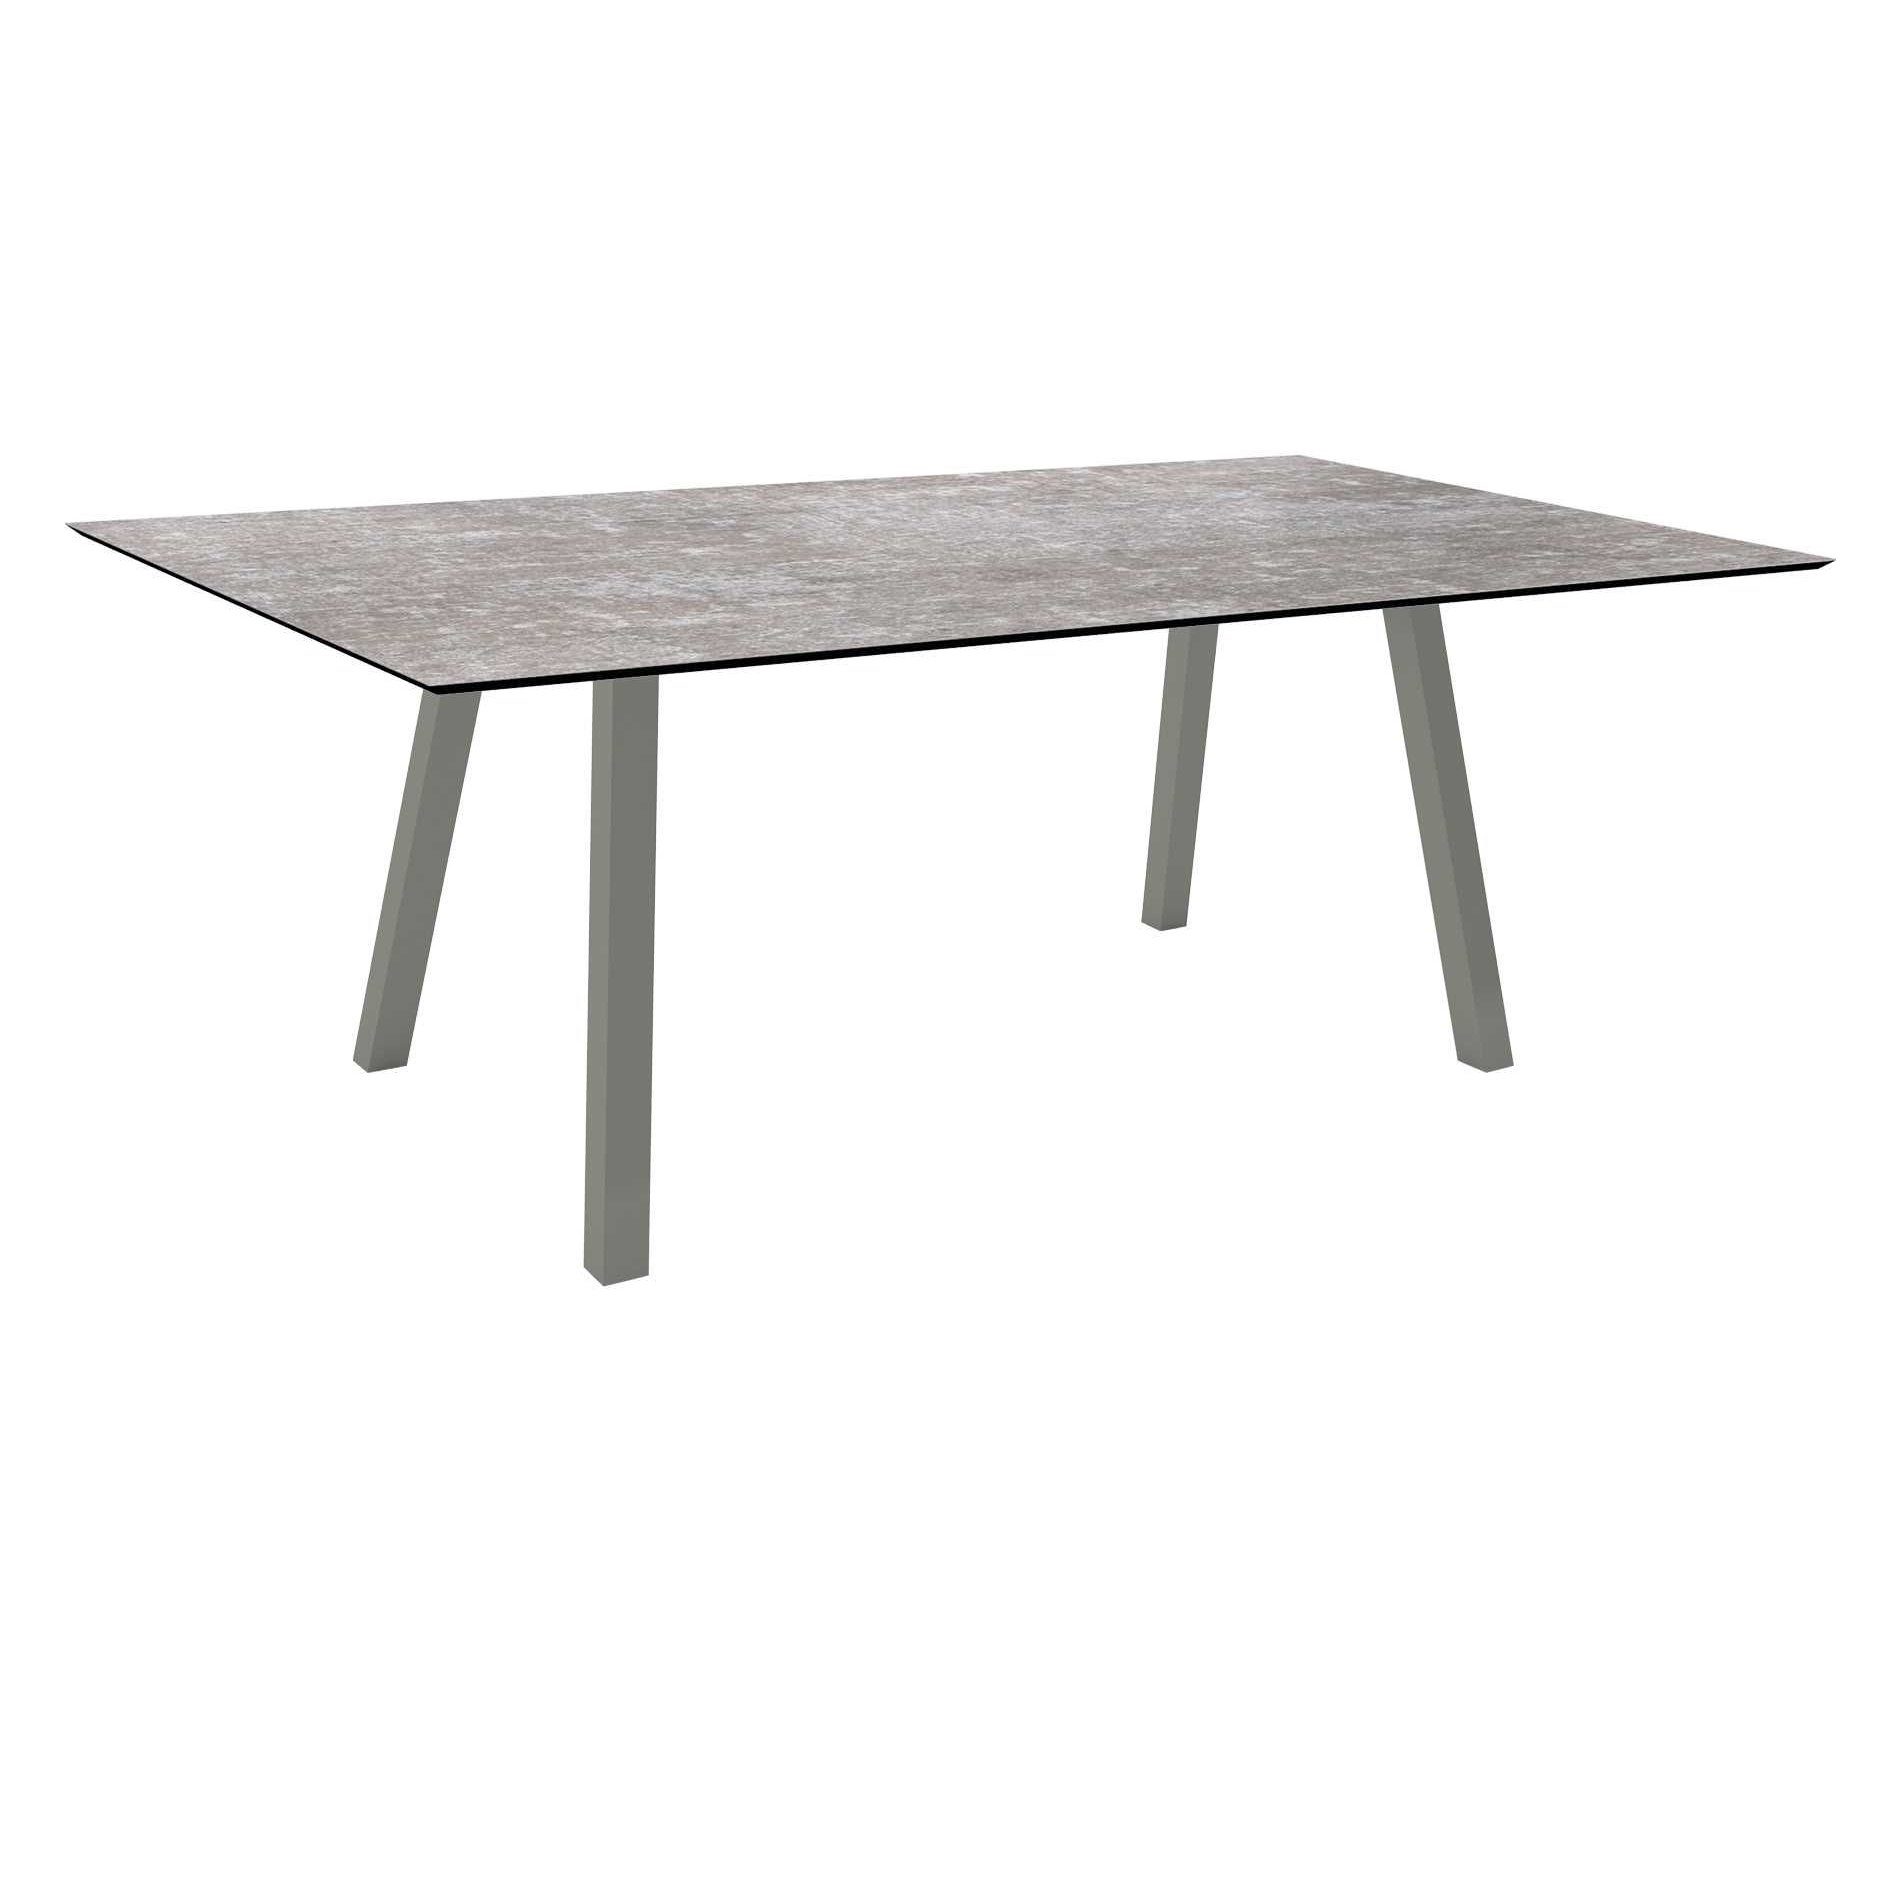 Stern Tisch "Interno", Größe 180x100cm, Alu graphit, Vierkantrohr, Tischplatte HPL Metallic Grau